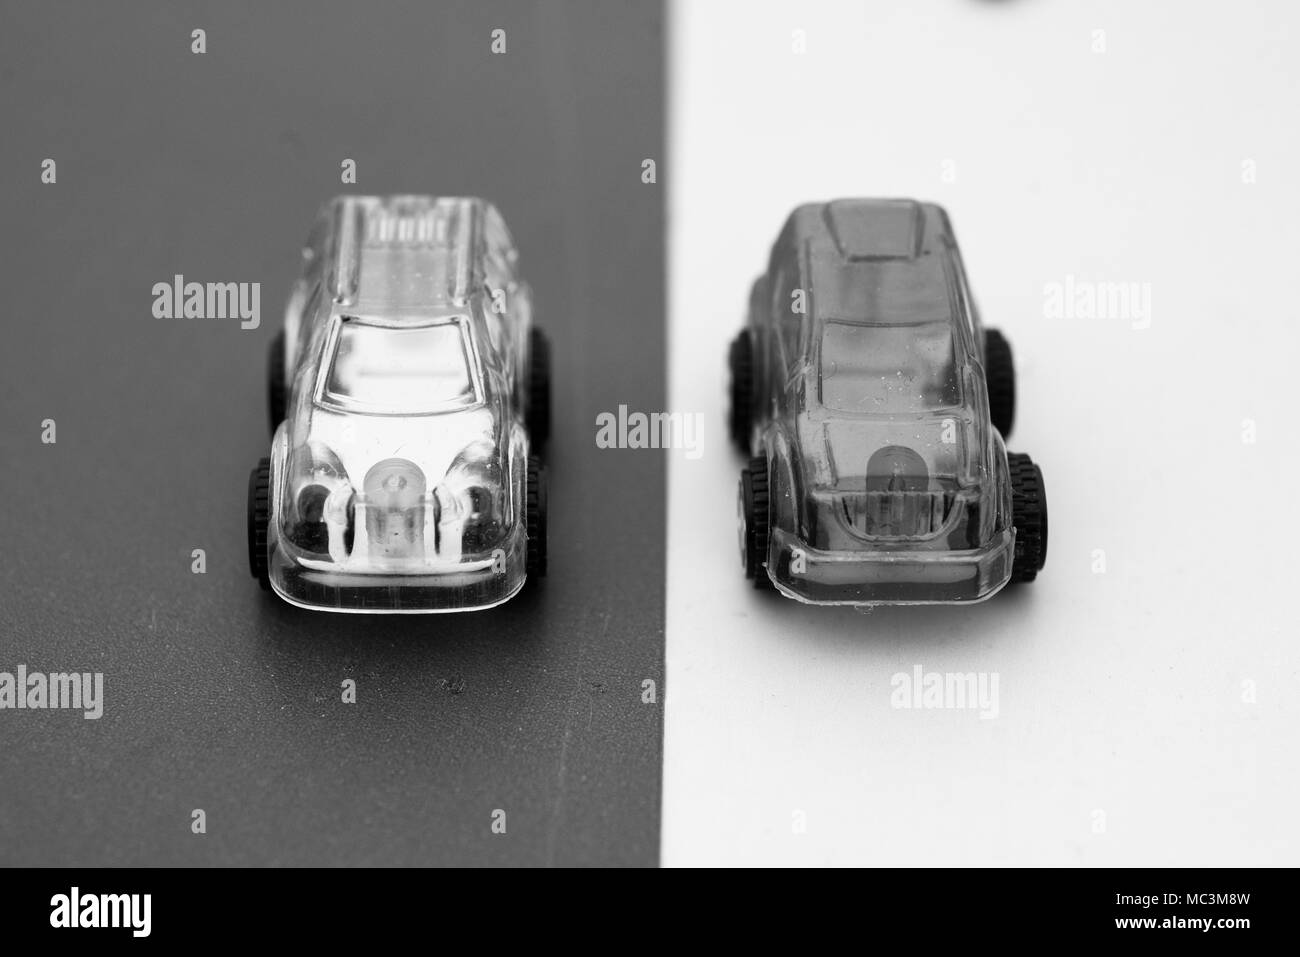 Transparent schwarz-weiß Bild von transparenten Spielzeugautos Stockfoto